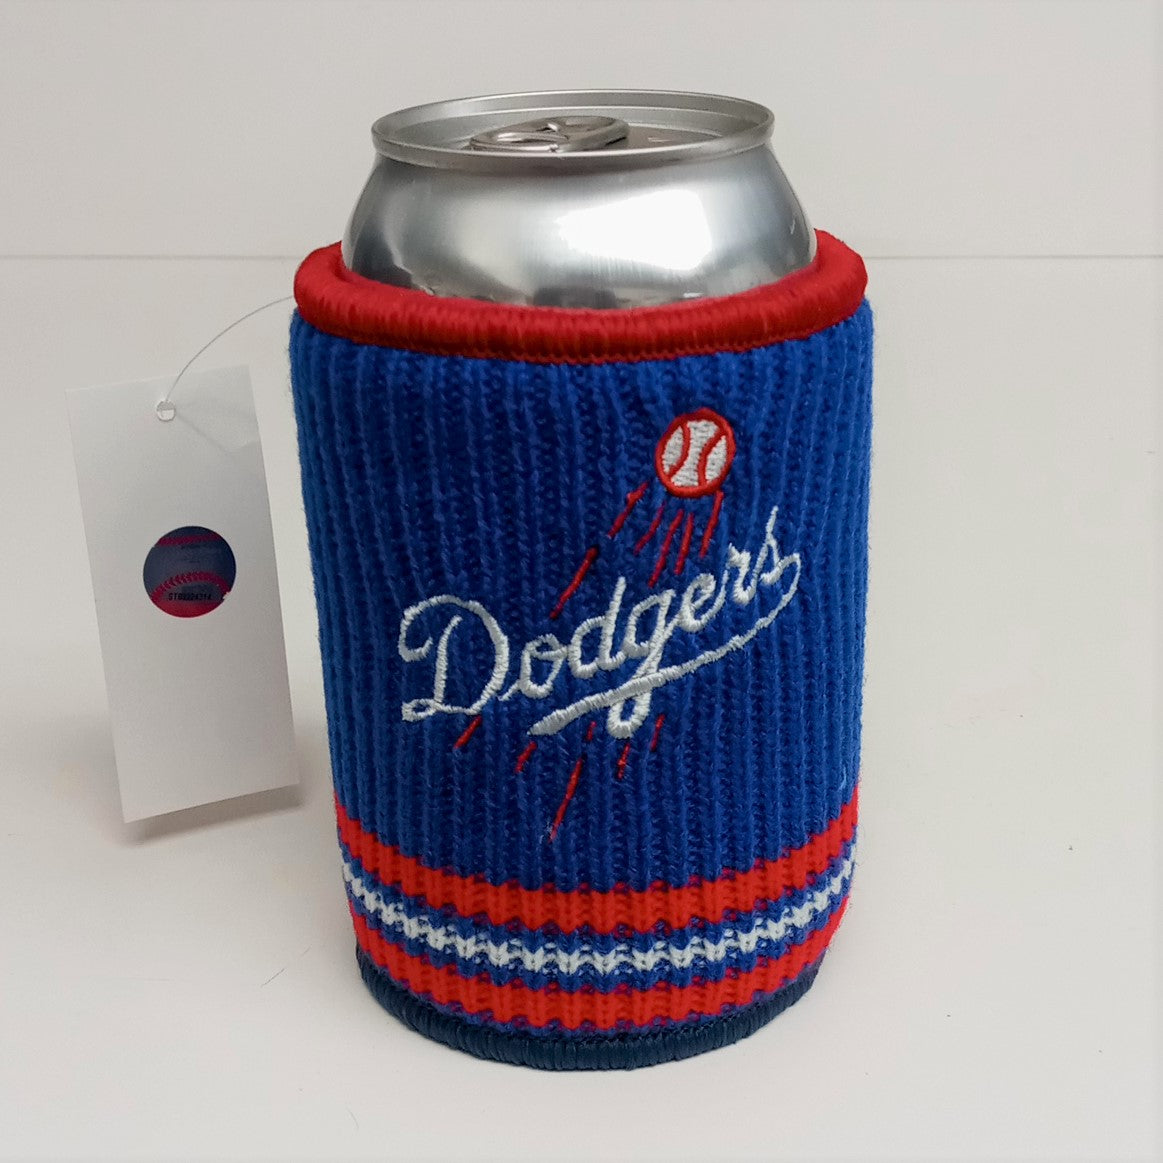 Kolder Woolie Beverage Koozie Insulator MLB Baseball Teams Logos